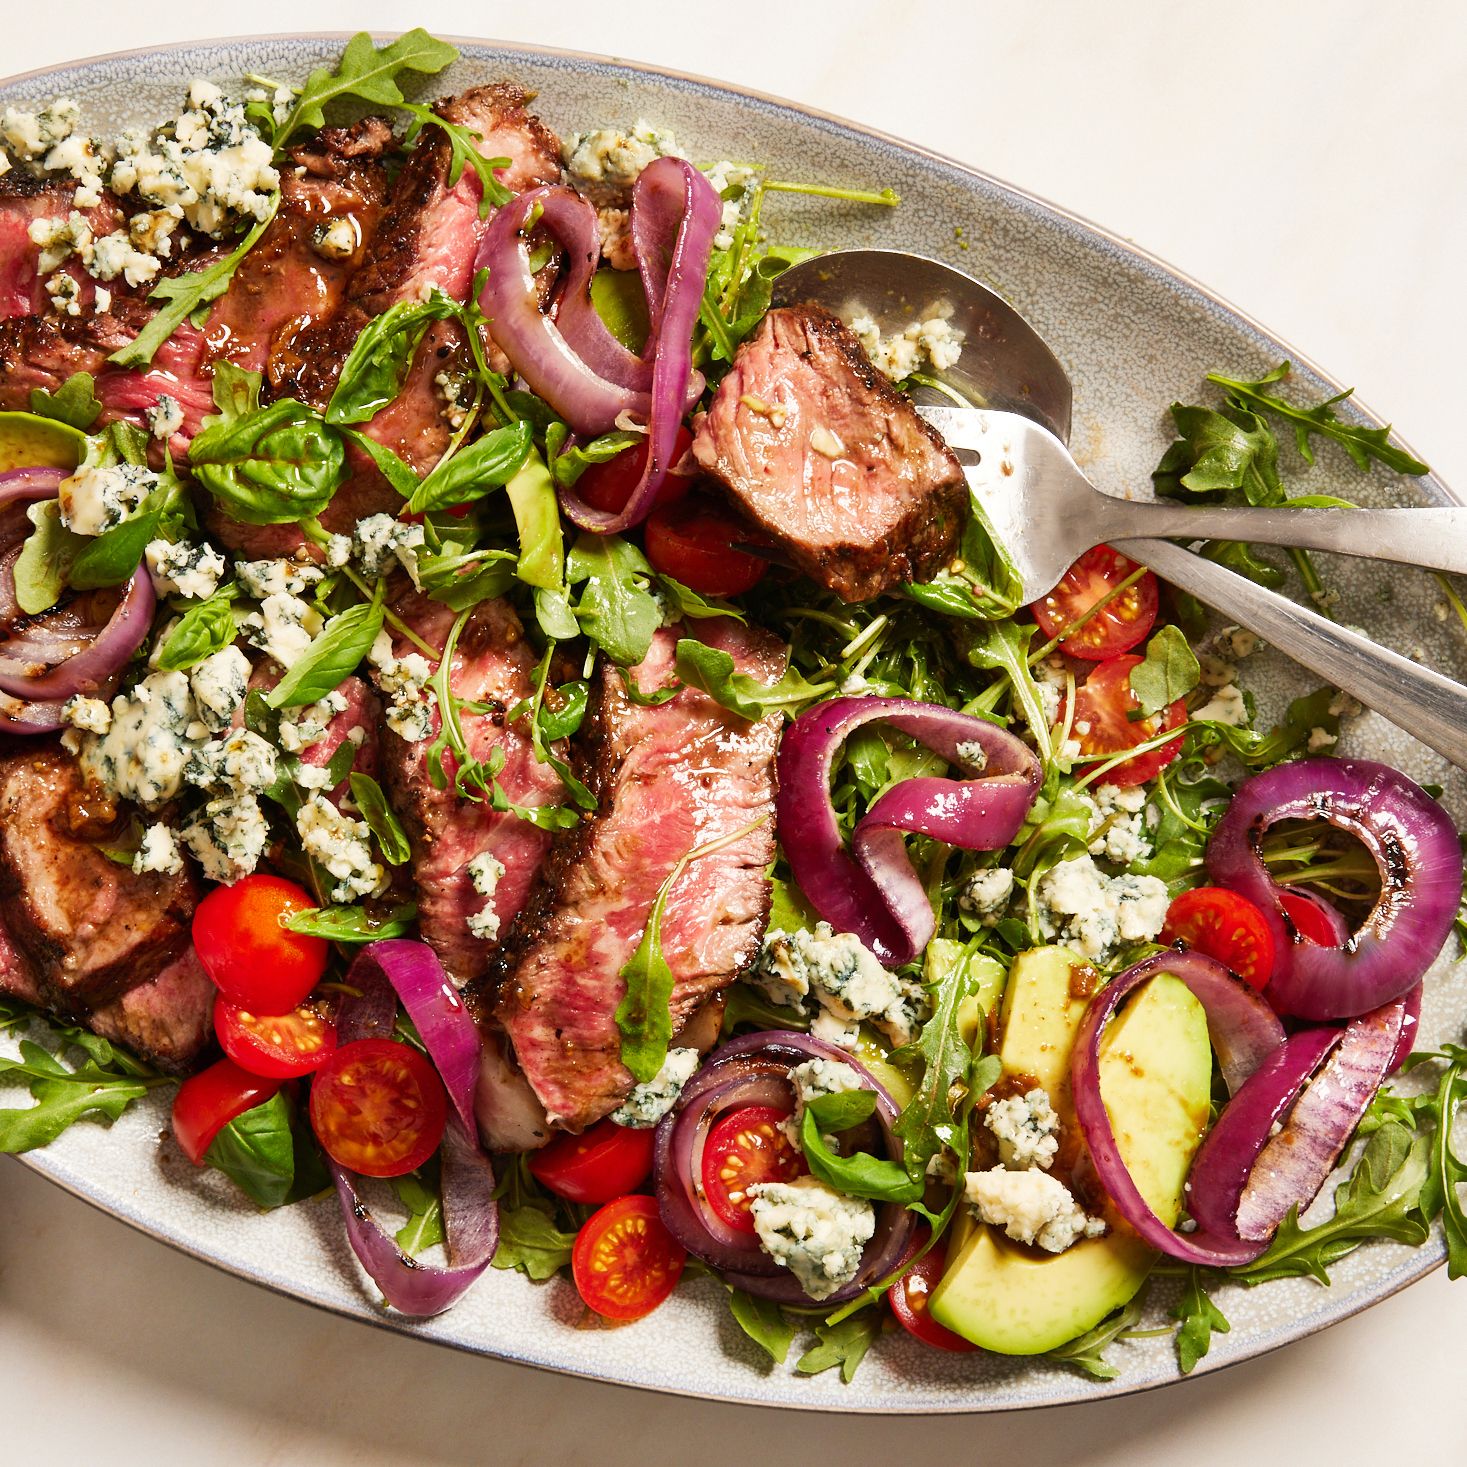 https://hips.hearstapps.com/hmg-prod/images/grilled-steak-salad-lead-6421fac8ab86f.jpg